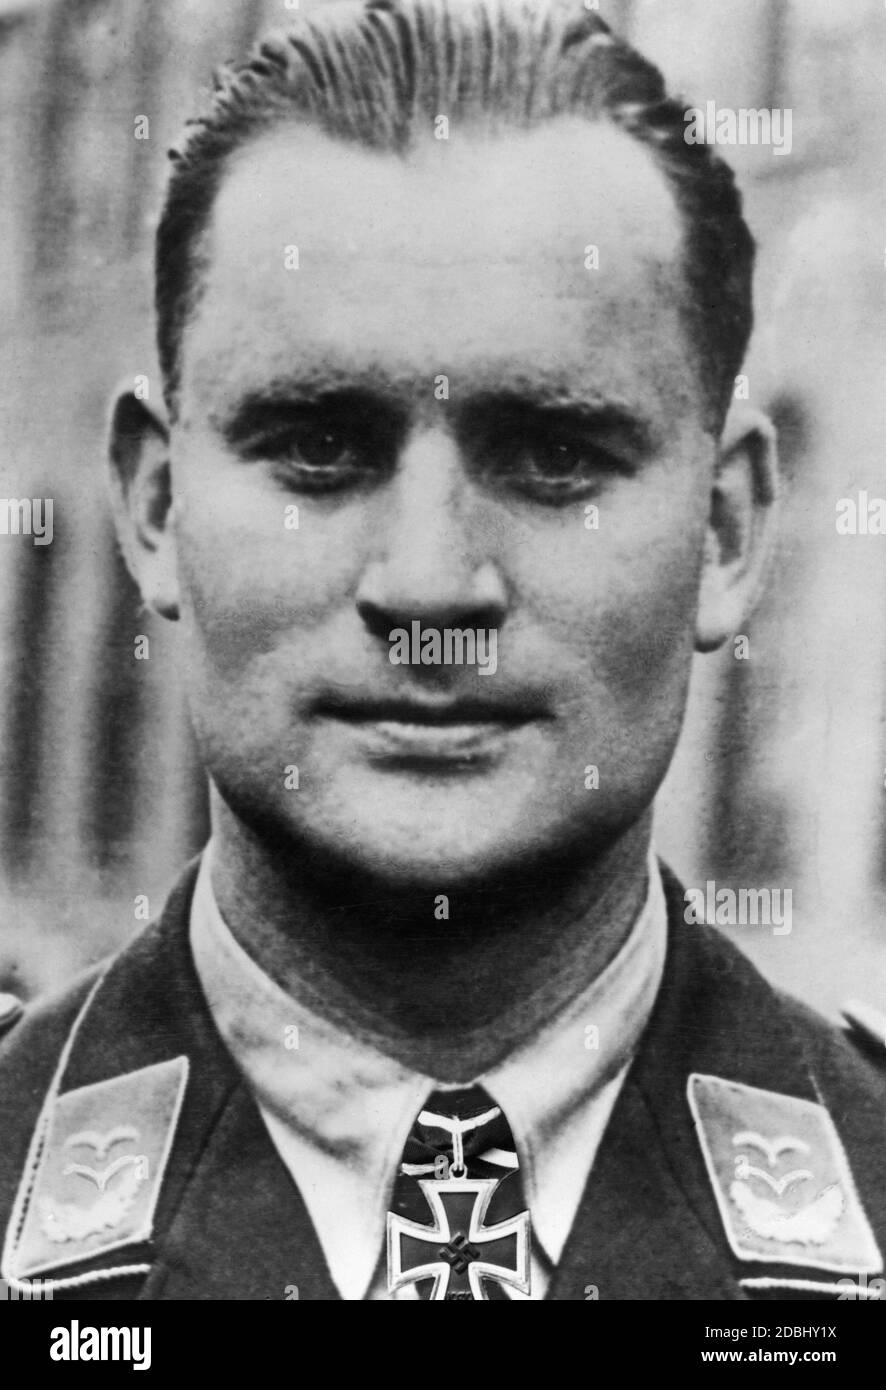 Oberleutnant Willi DUS, 8./Kampfgeschwader 3 avec la Croix du Chevalier, en 1941. La date est la date d'émission. Banque D'Images